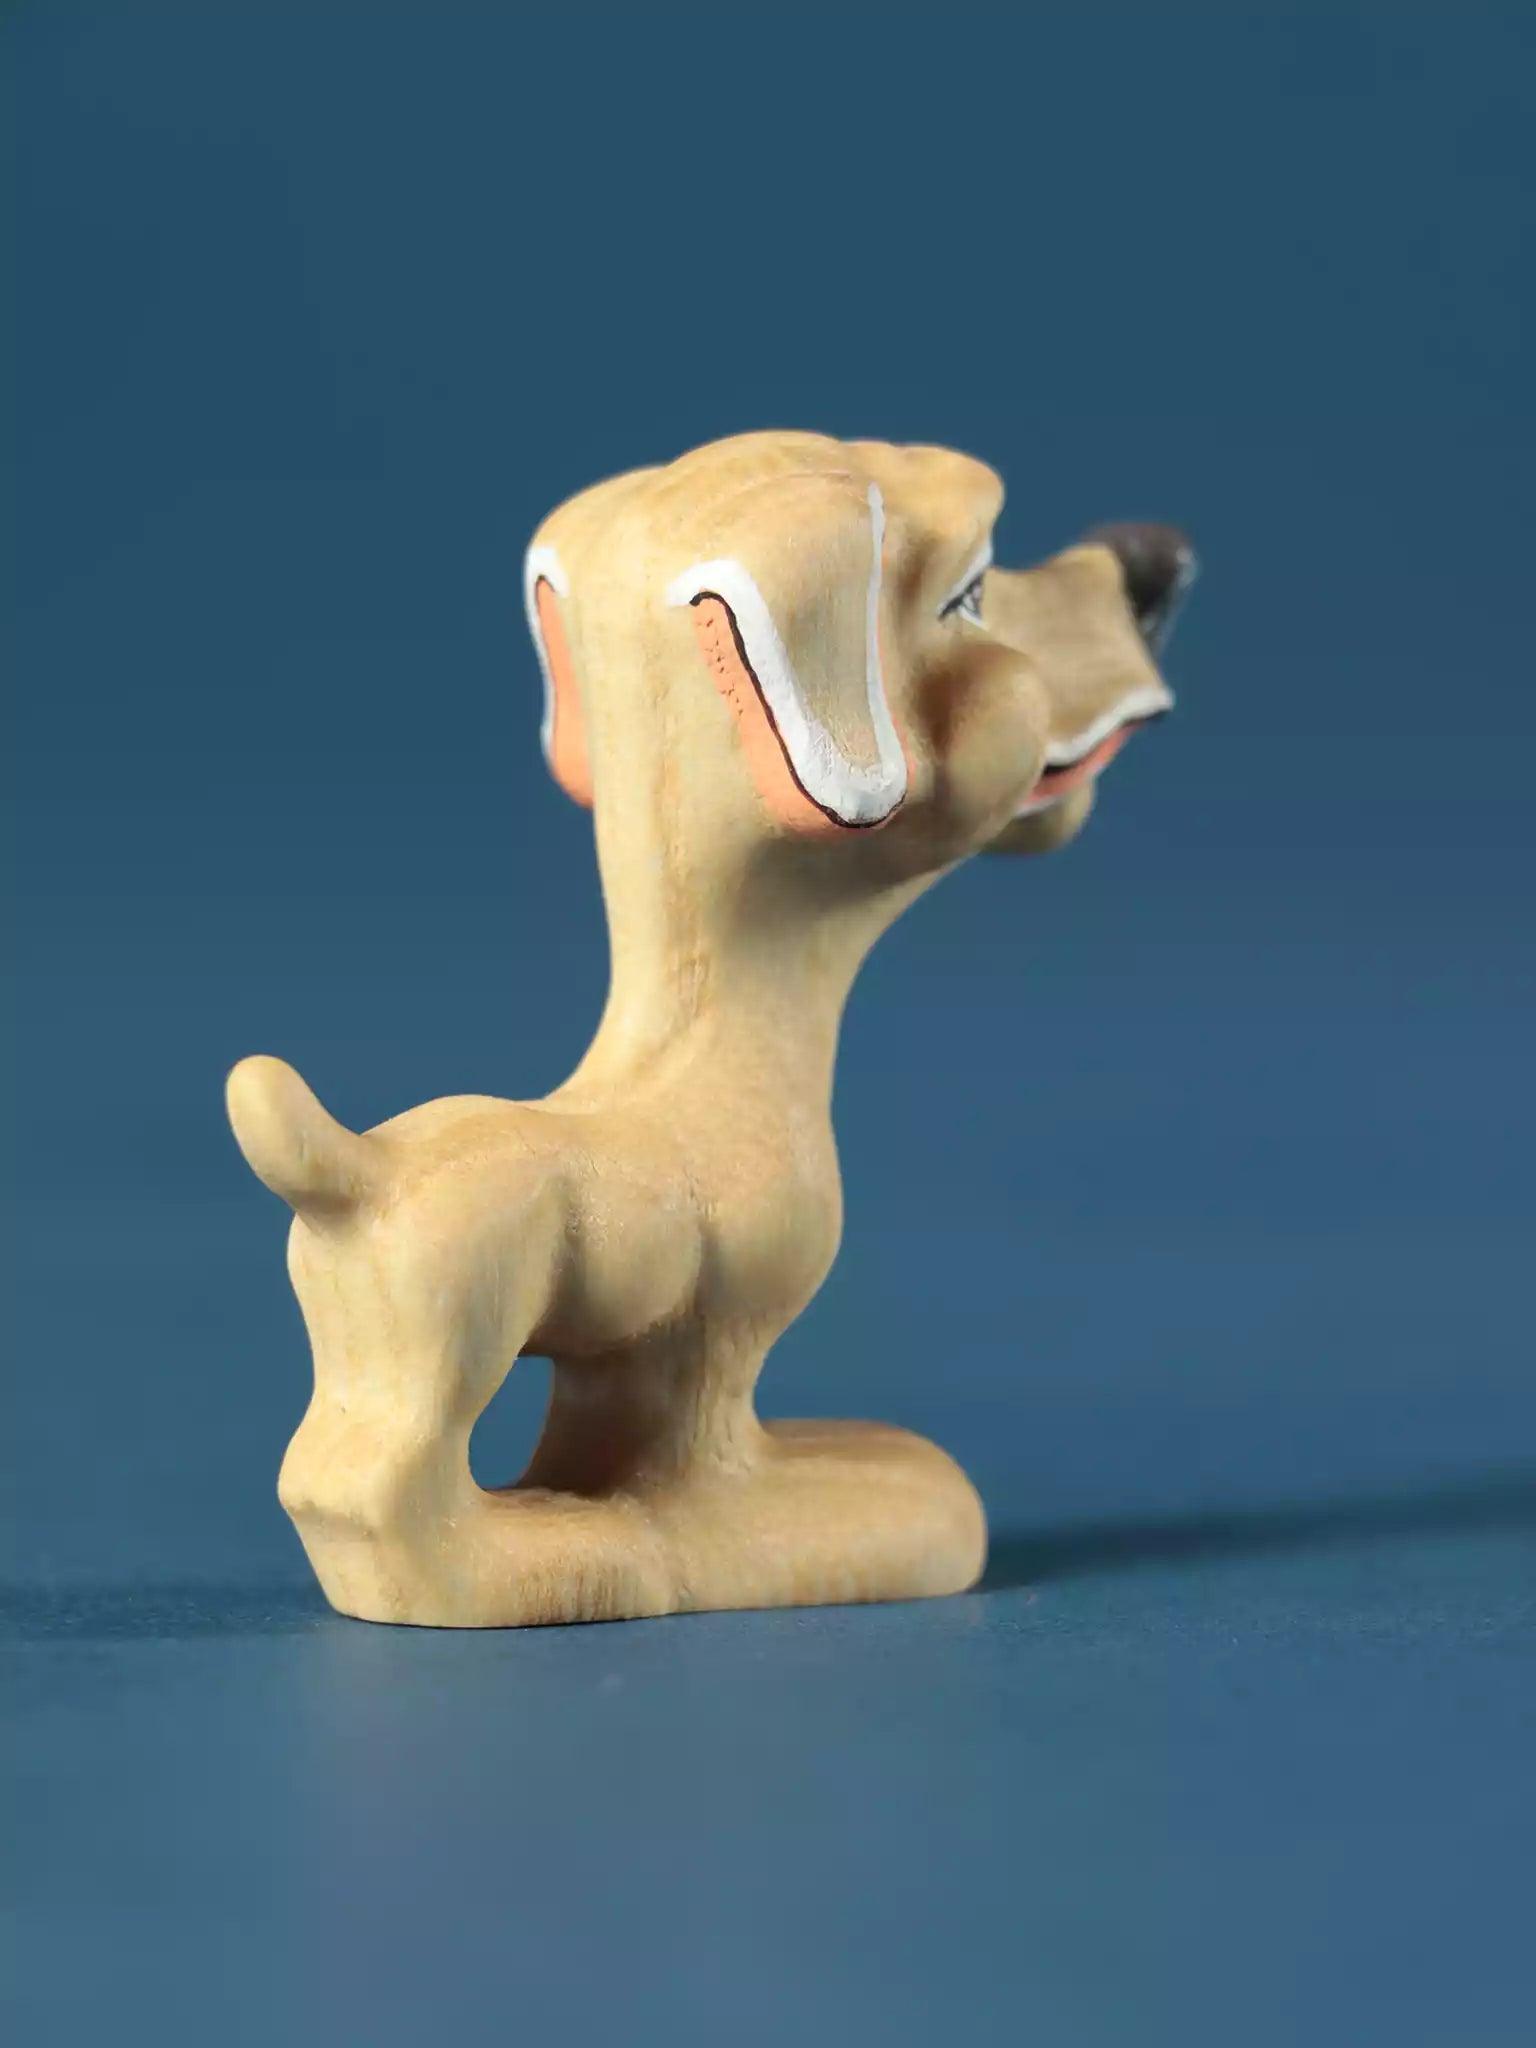 wooden_dogs_toys.jpg?v=1575875153